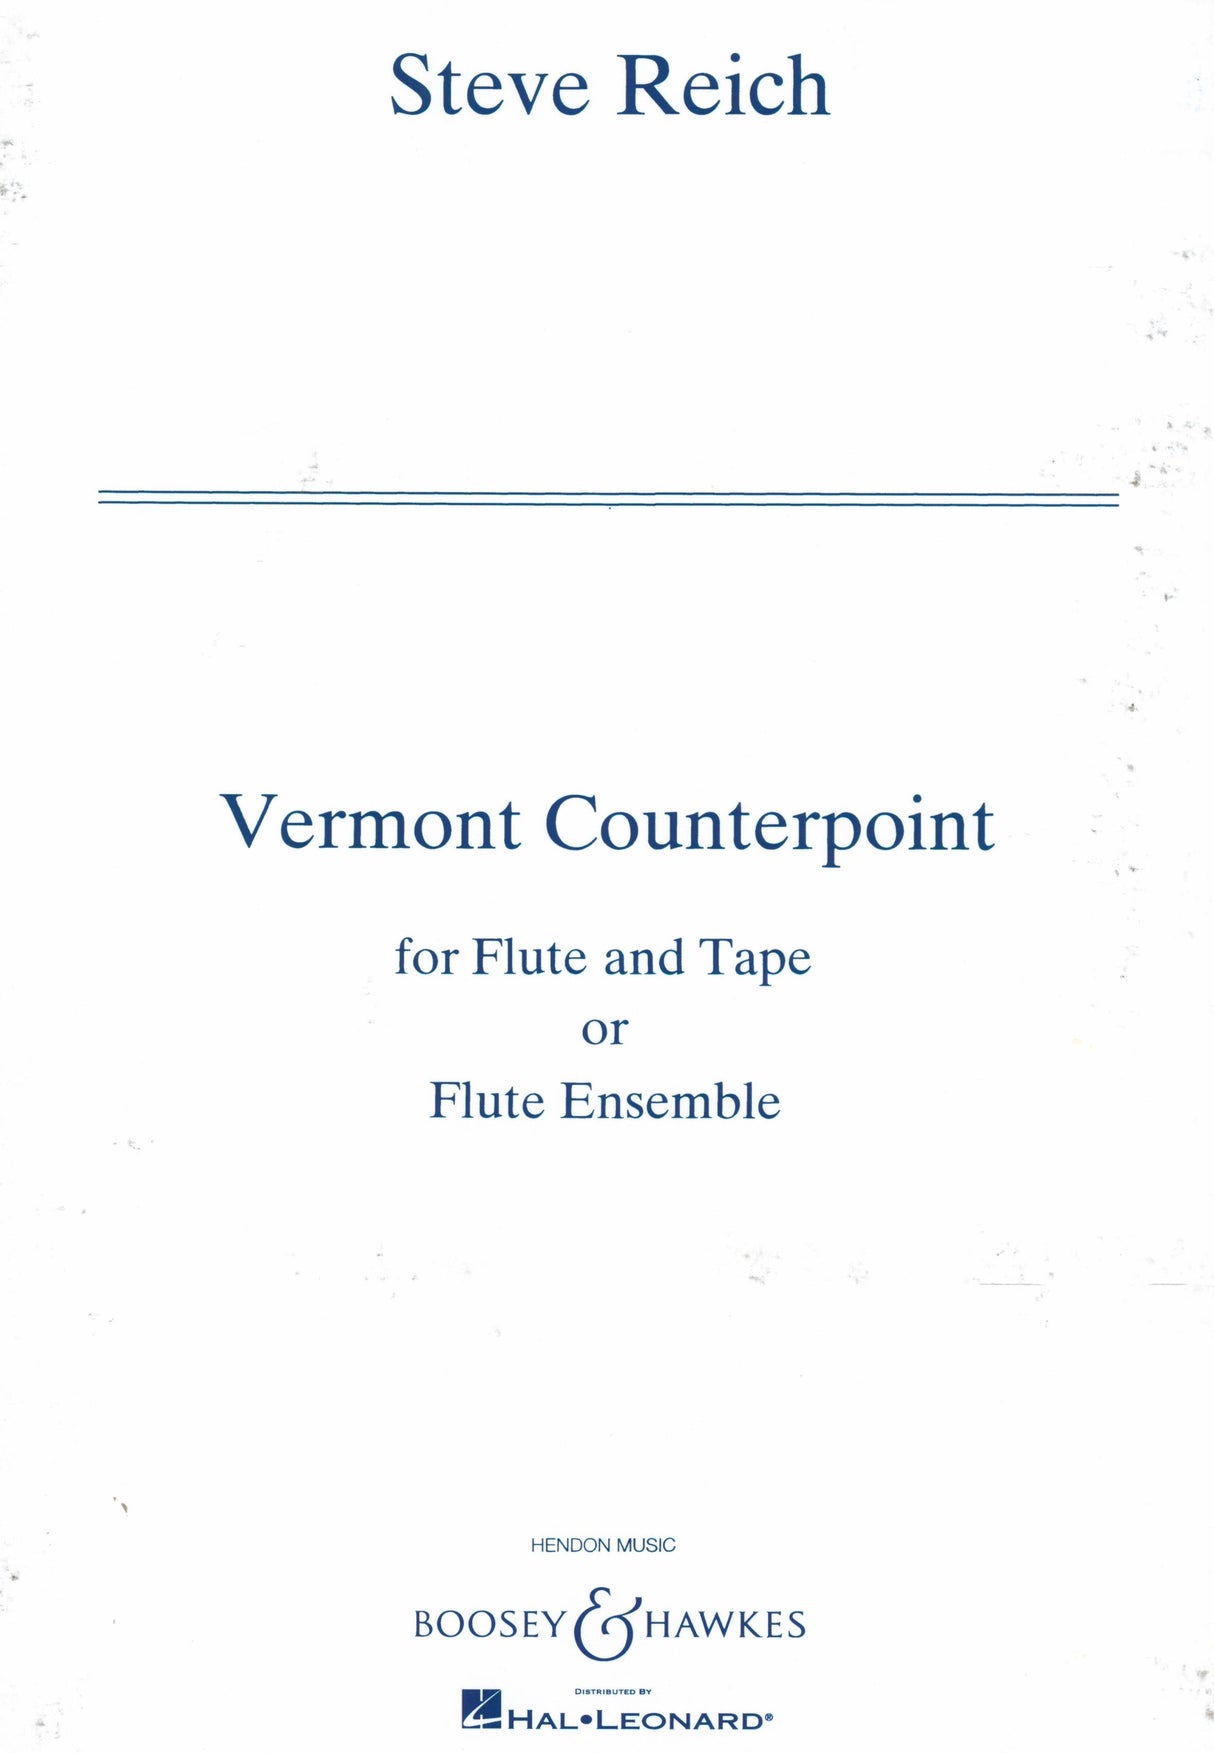 Reich: Vermont Counterpoint